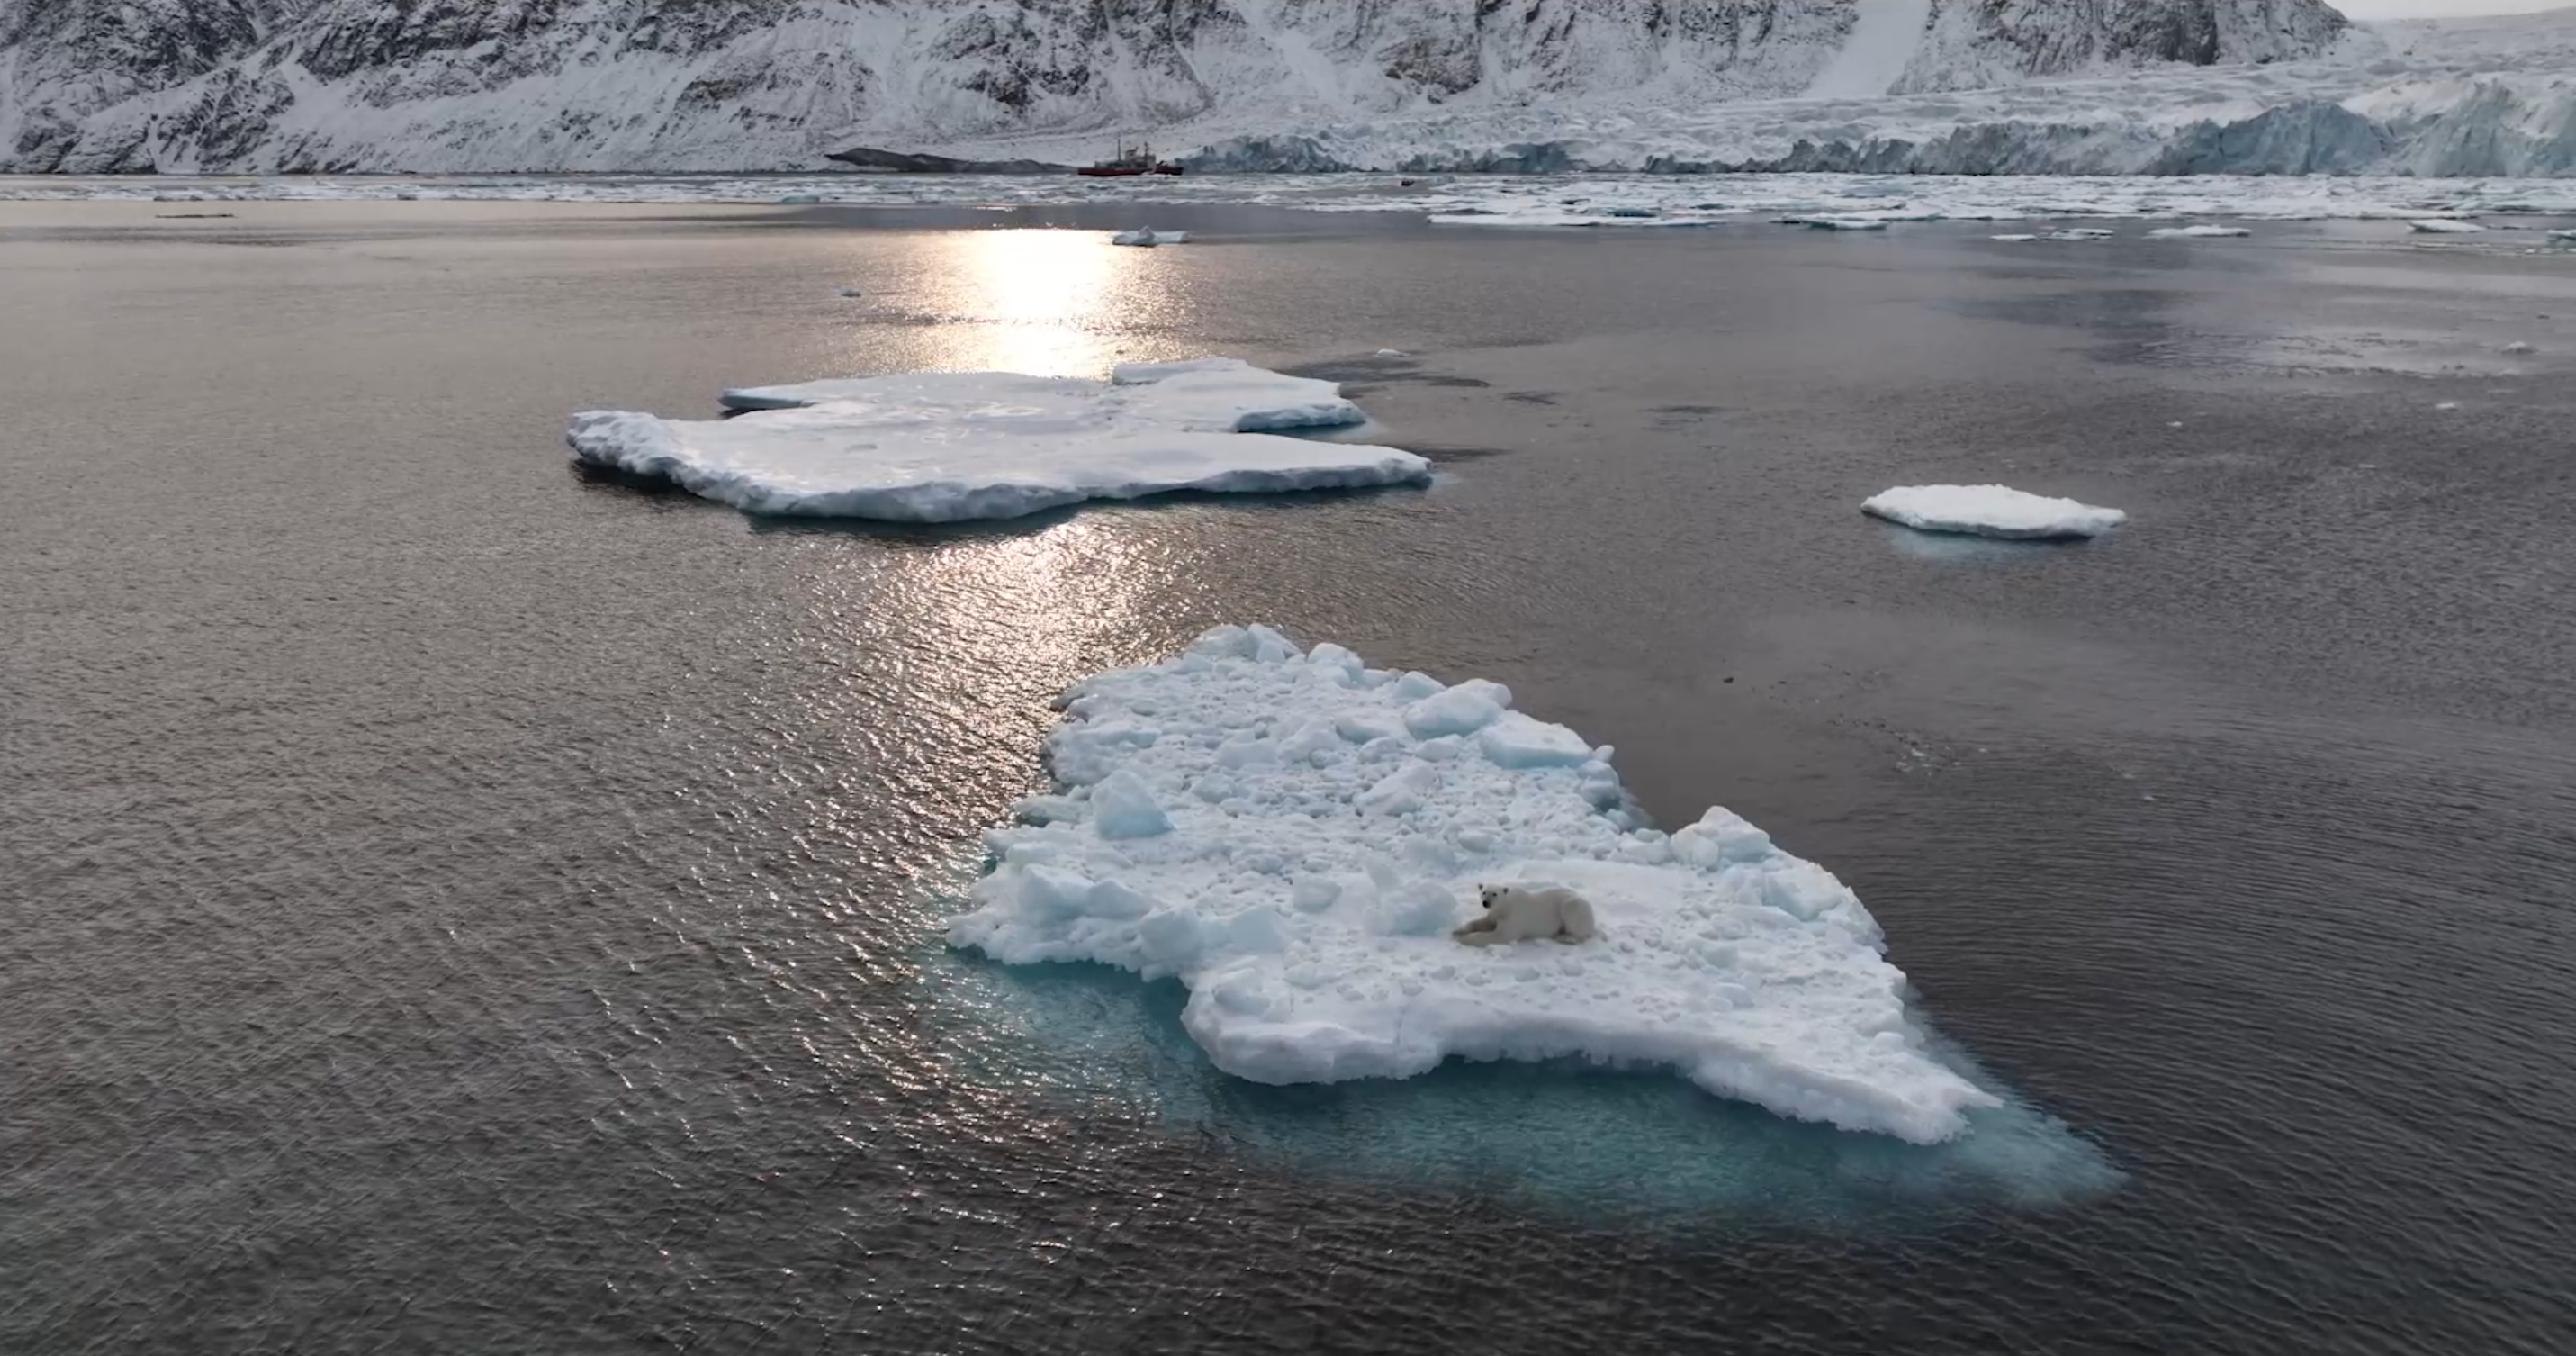 un paysage de mer avec quelques petits icebergs. Au premier plan, un ours polaire est installé sur un iceberg très plat. Au fond, on voit une falaise d'un immense glacier devant laquelle se trouve un brise-glace rouge